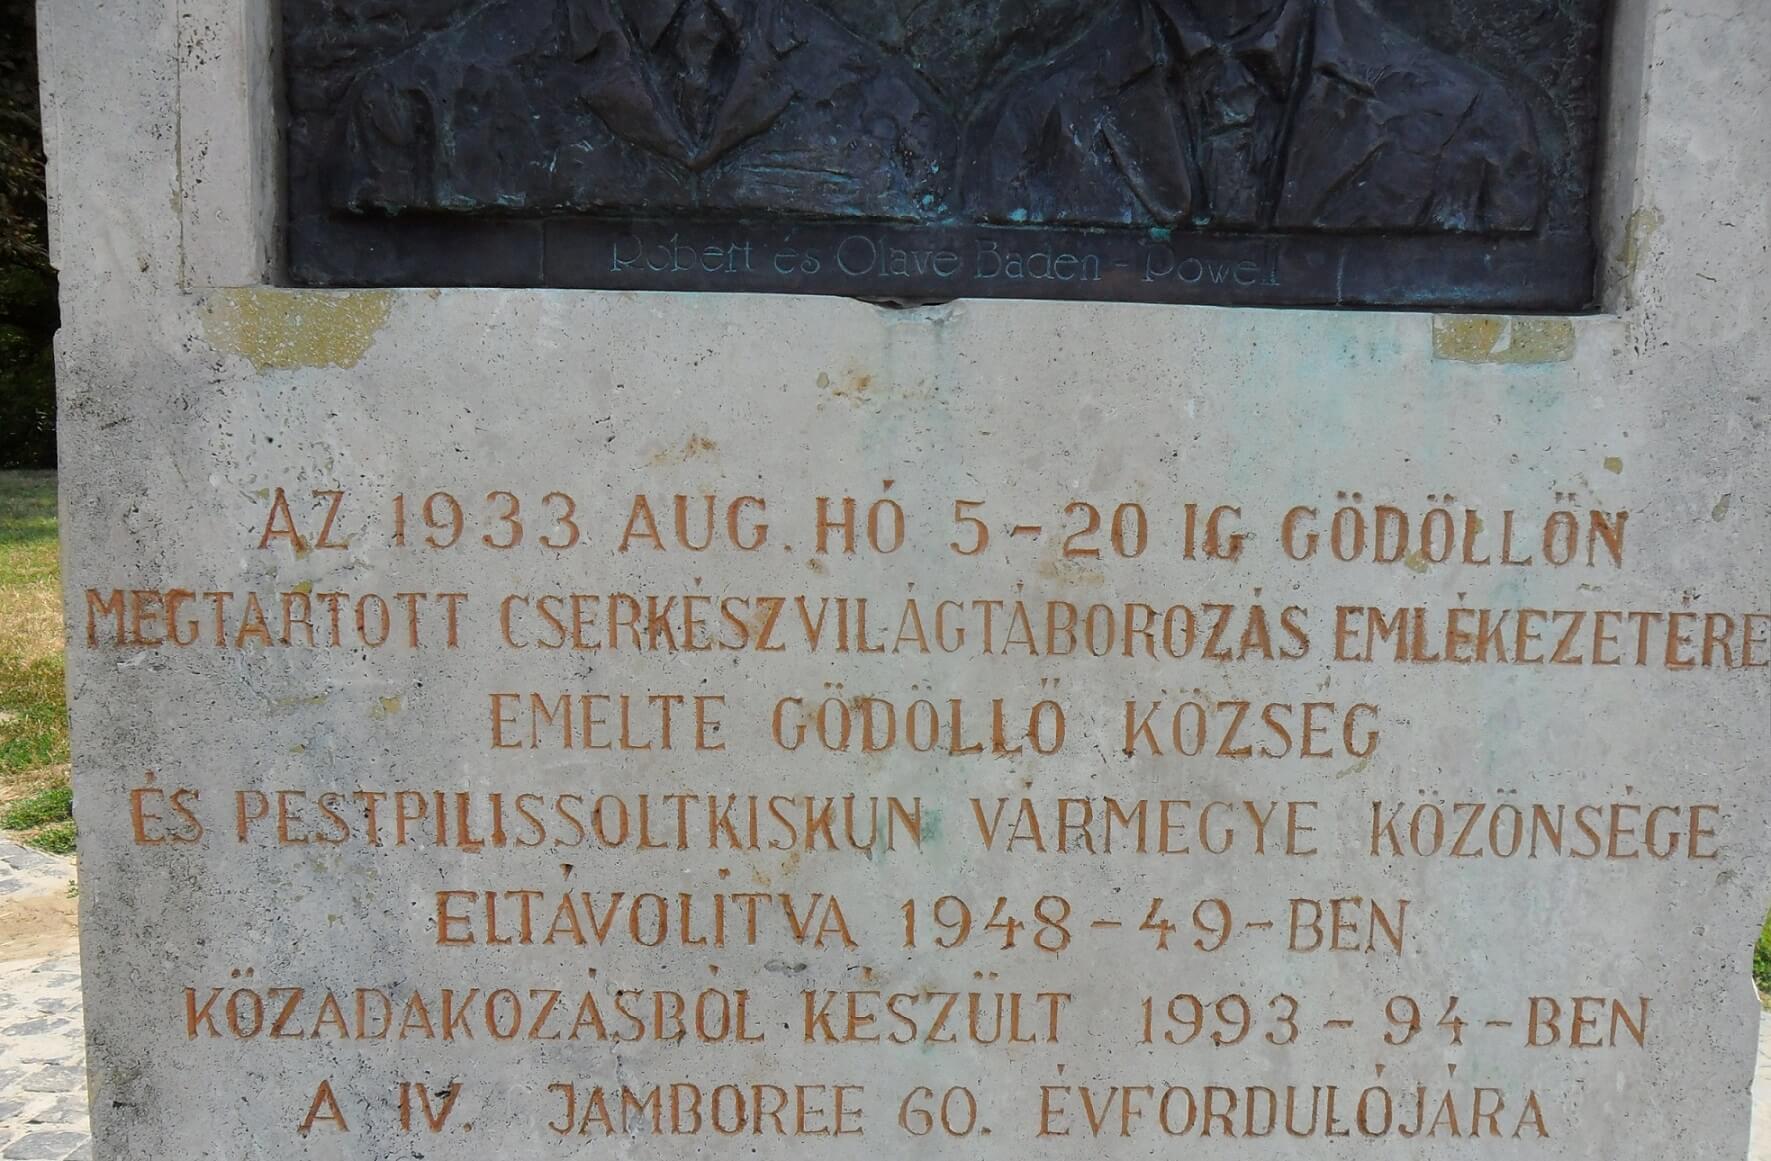 Gödöllő Grassalkovich kastély parkja Cserkész világtáborozás emlékszobor táblája